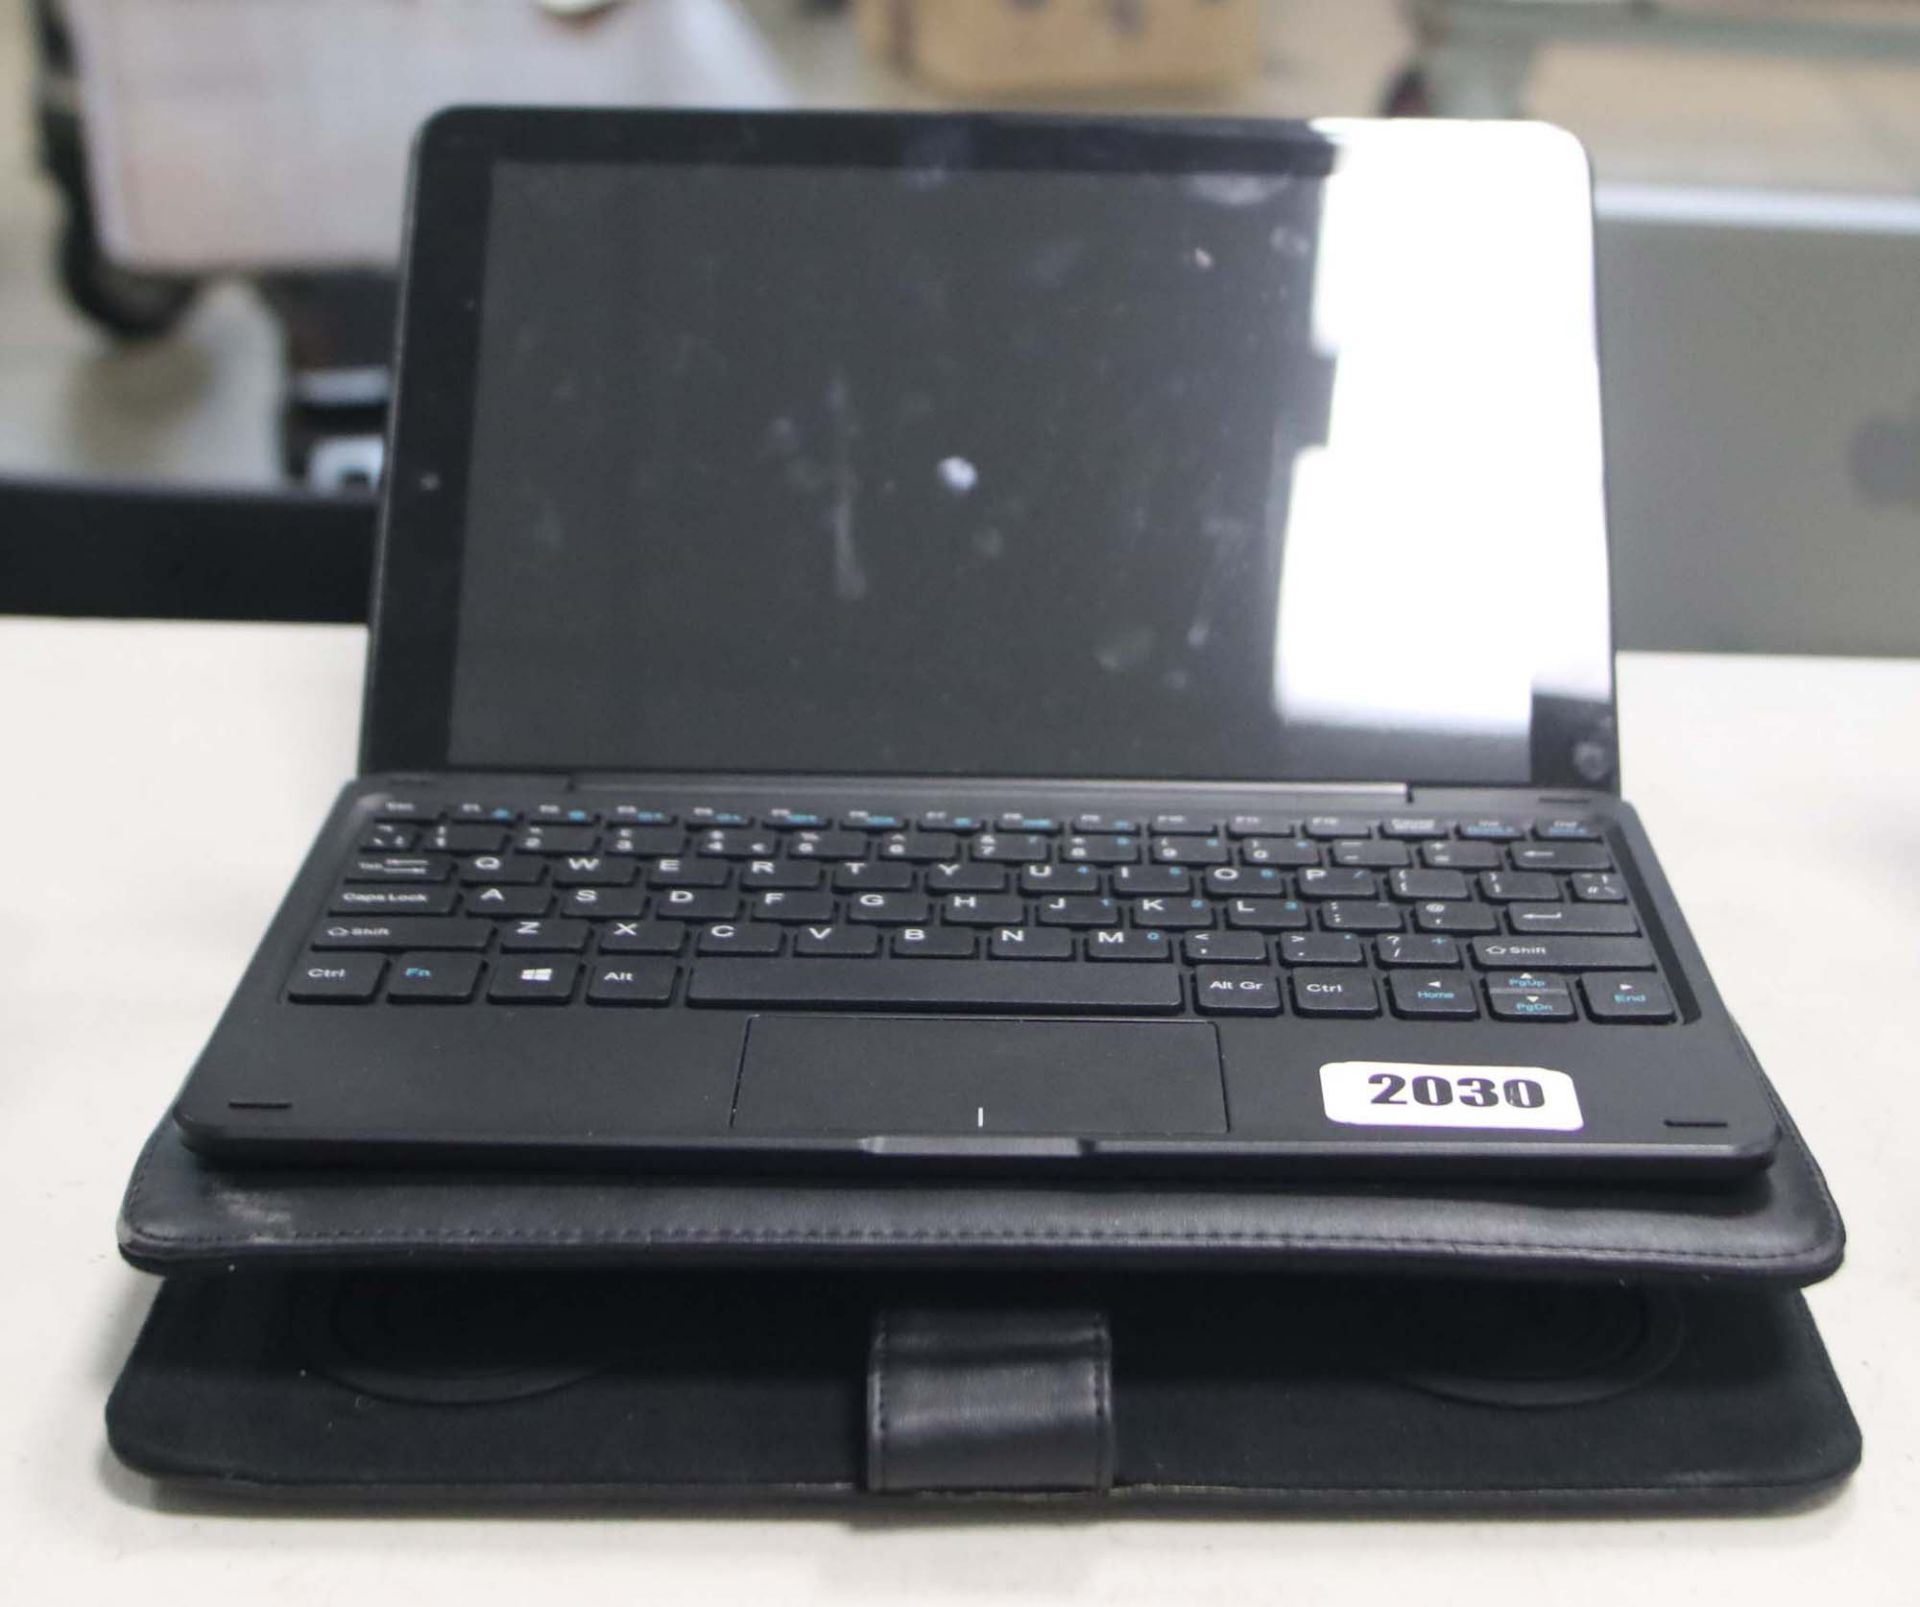 2211 - Lynix 1010B tablet 1.1 unit with attachable keyboard, Intel Atom processor, 2gb ram, 32gb